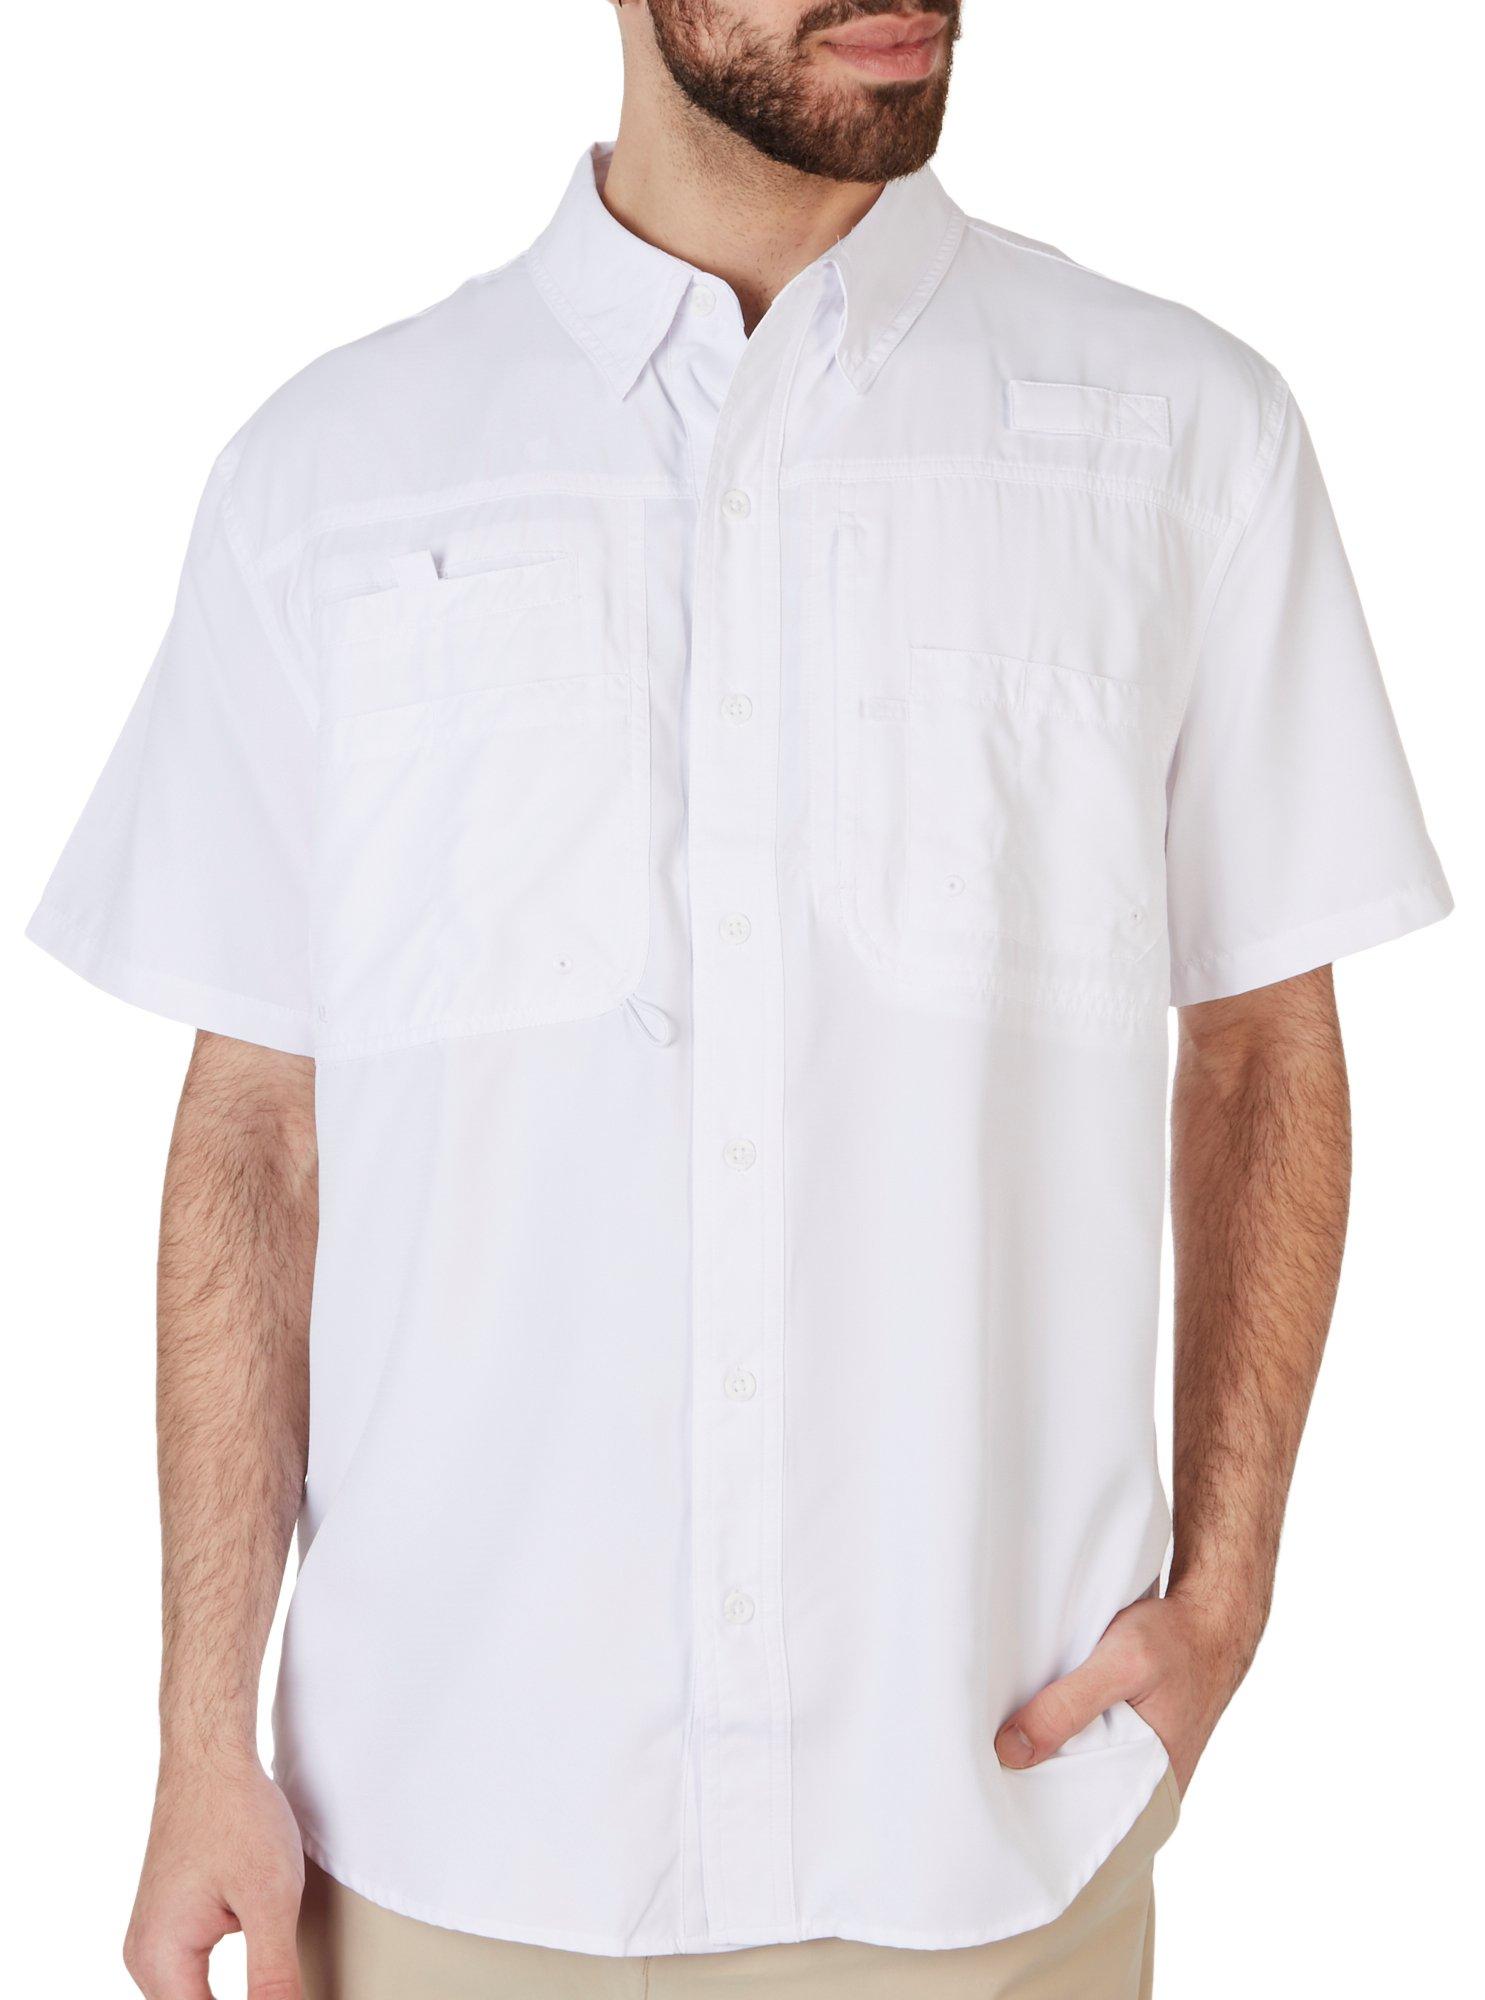  Reel Legends Mens Sailfish Suns T-Shirt Medium White